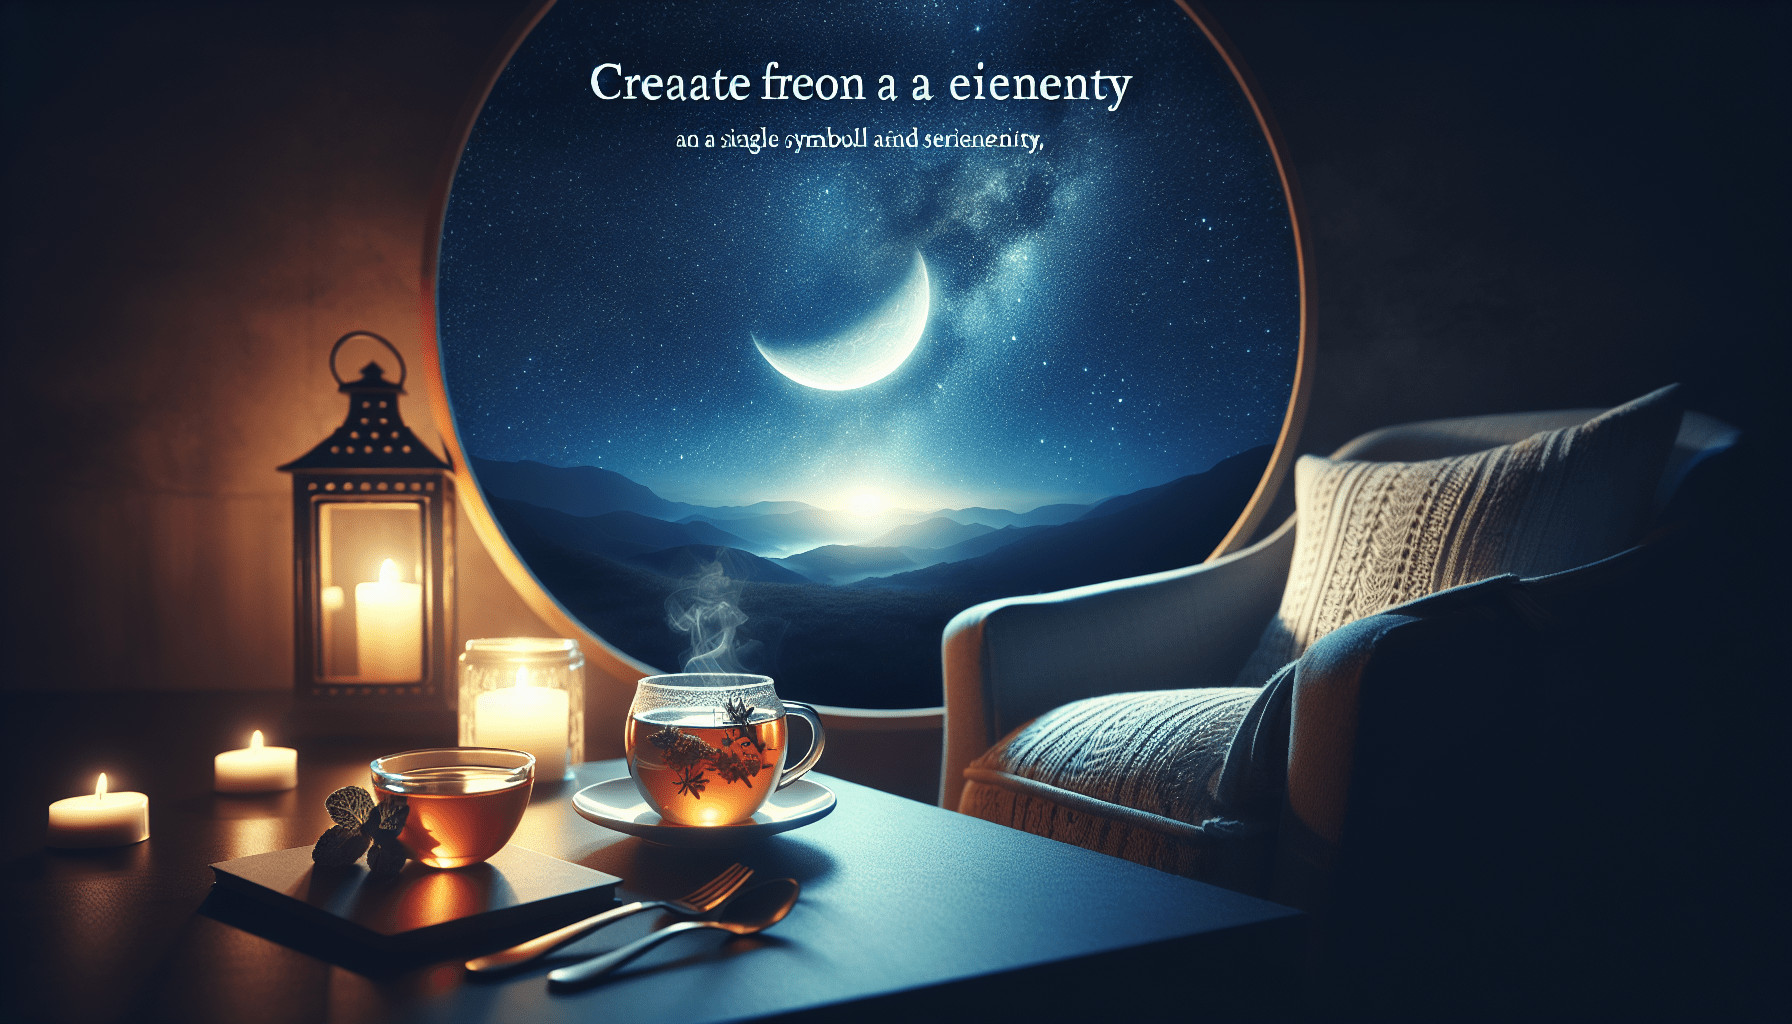 Celestial Seasonings Herbal Tea – Sleepytime Review